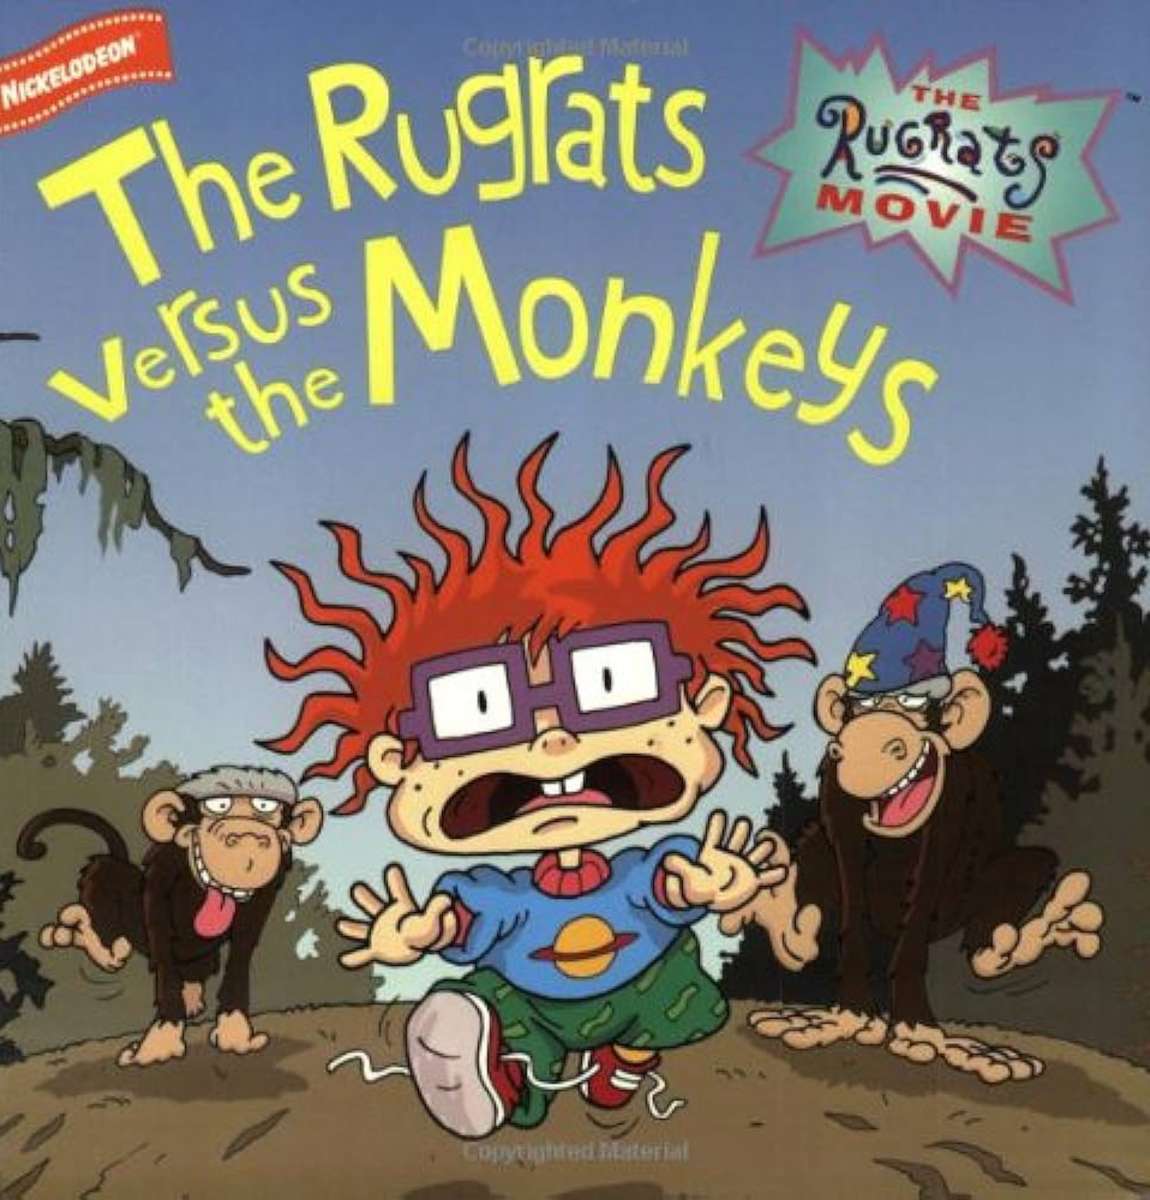 The Rugrats versus the Monkeys (könyvborító) kirakós online